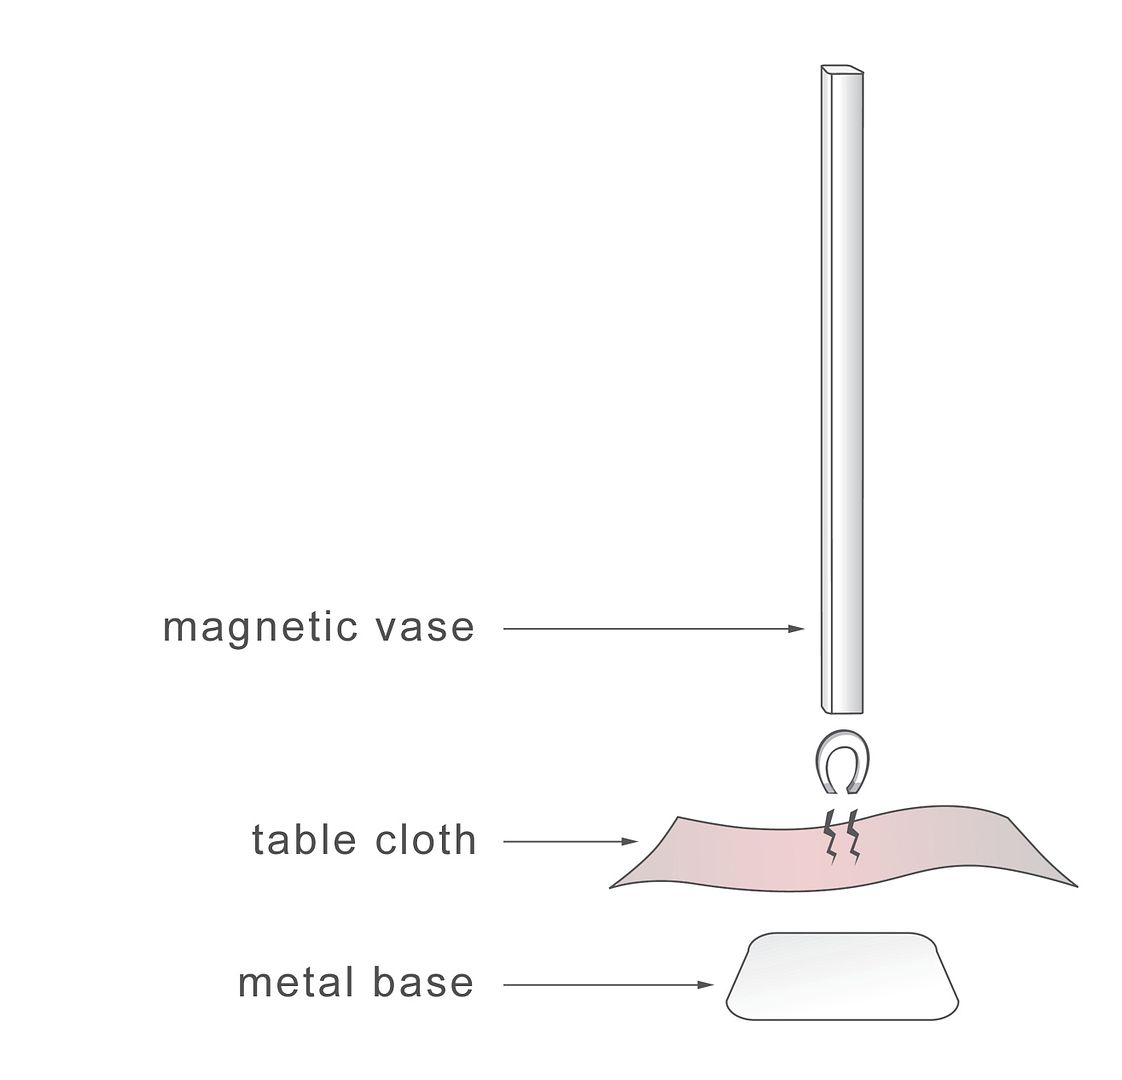 magnetic vase